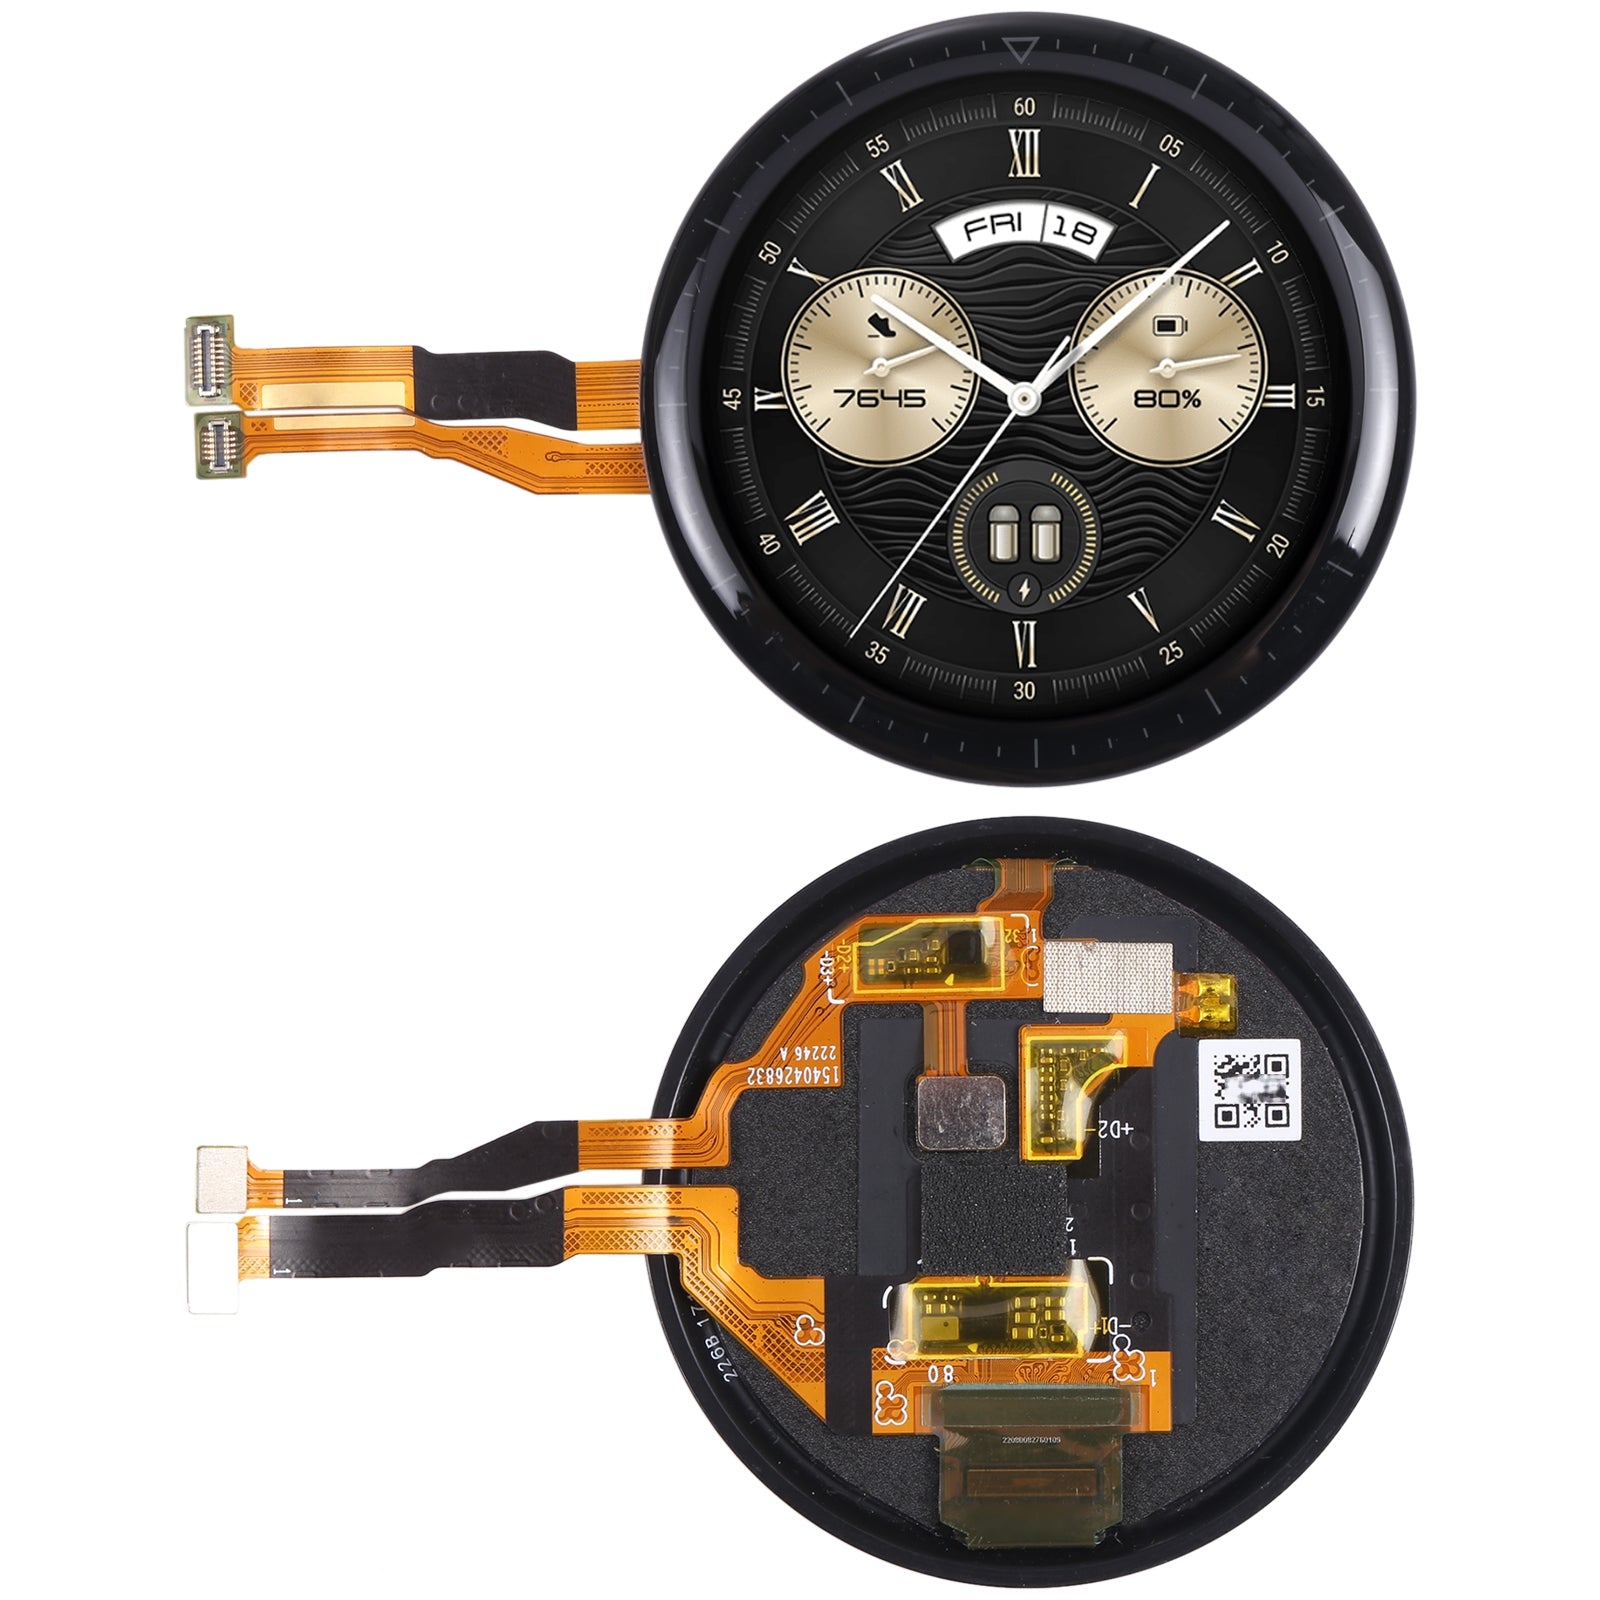 Pantalla Táctil y LCD para Huawei Watch GT2 Pro - Negra - Repuestos Fuentes